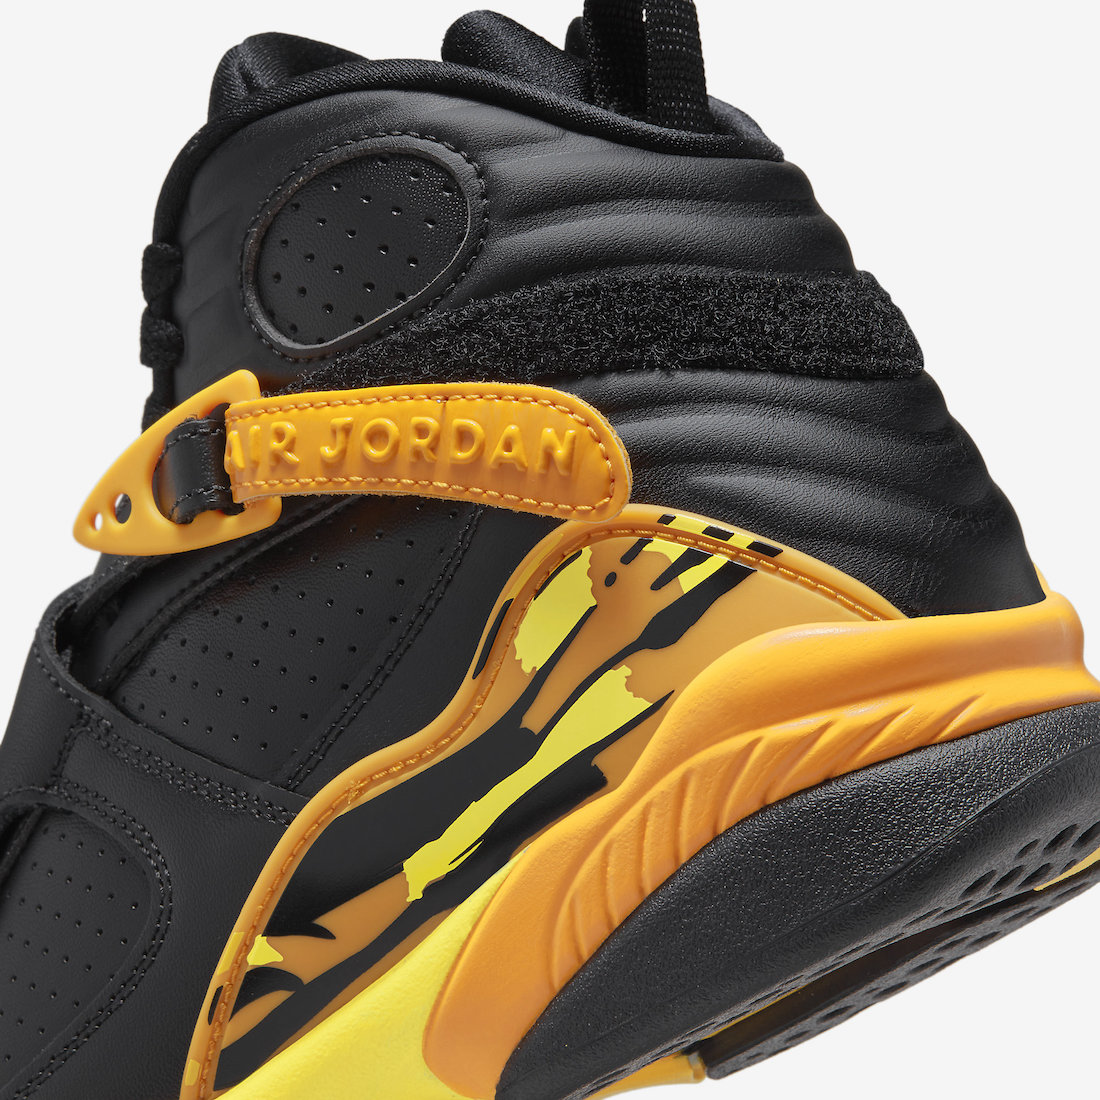 Air Jordan 8 noire et jaune (7)